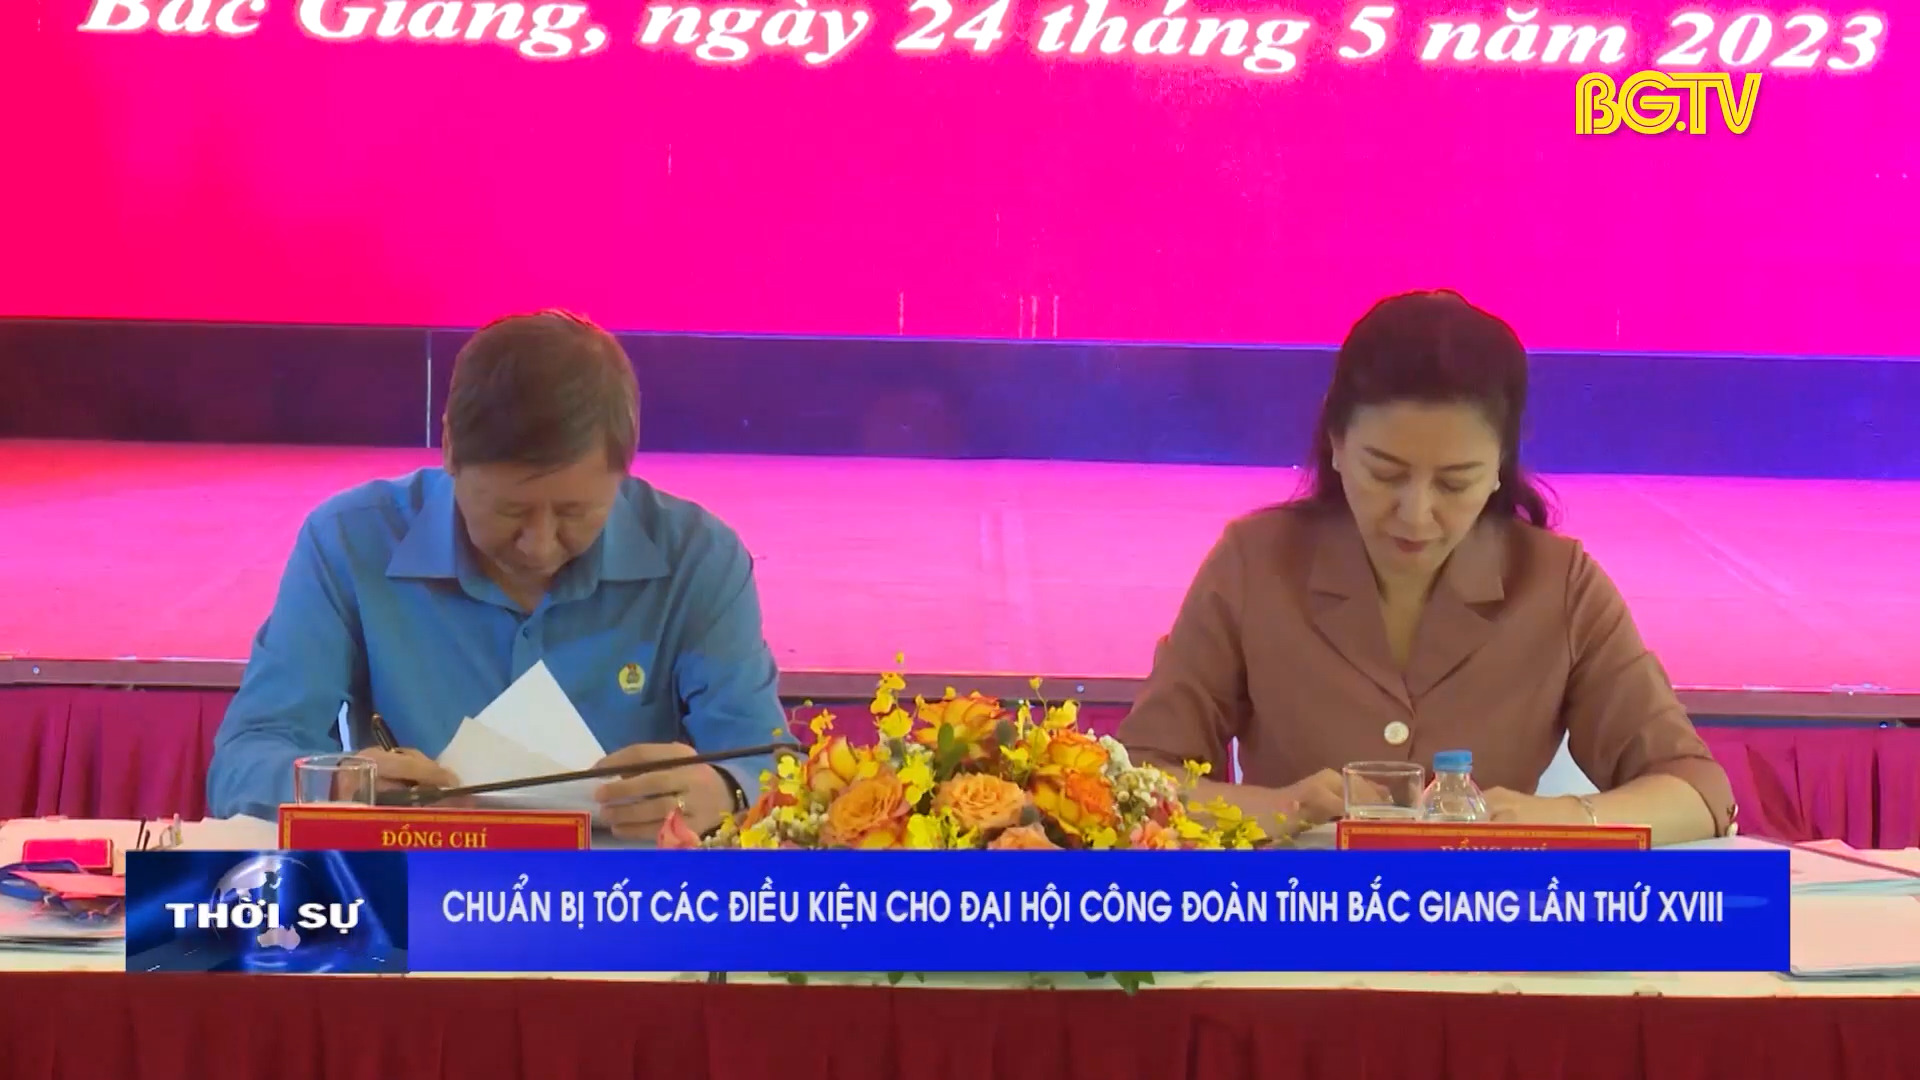 Công tác chuẩn bị cho đại hội công đoàn tỉnh Bắc Giang lần thứ XVIII